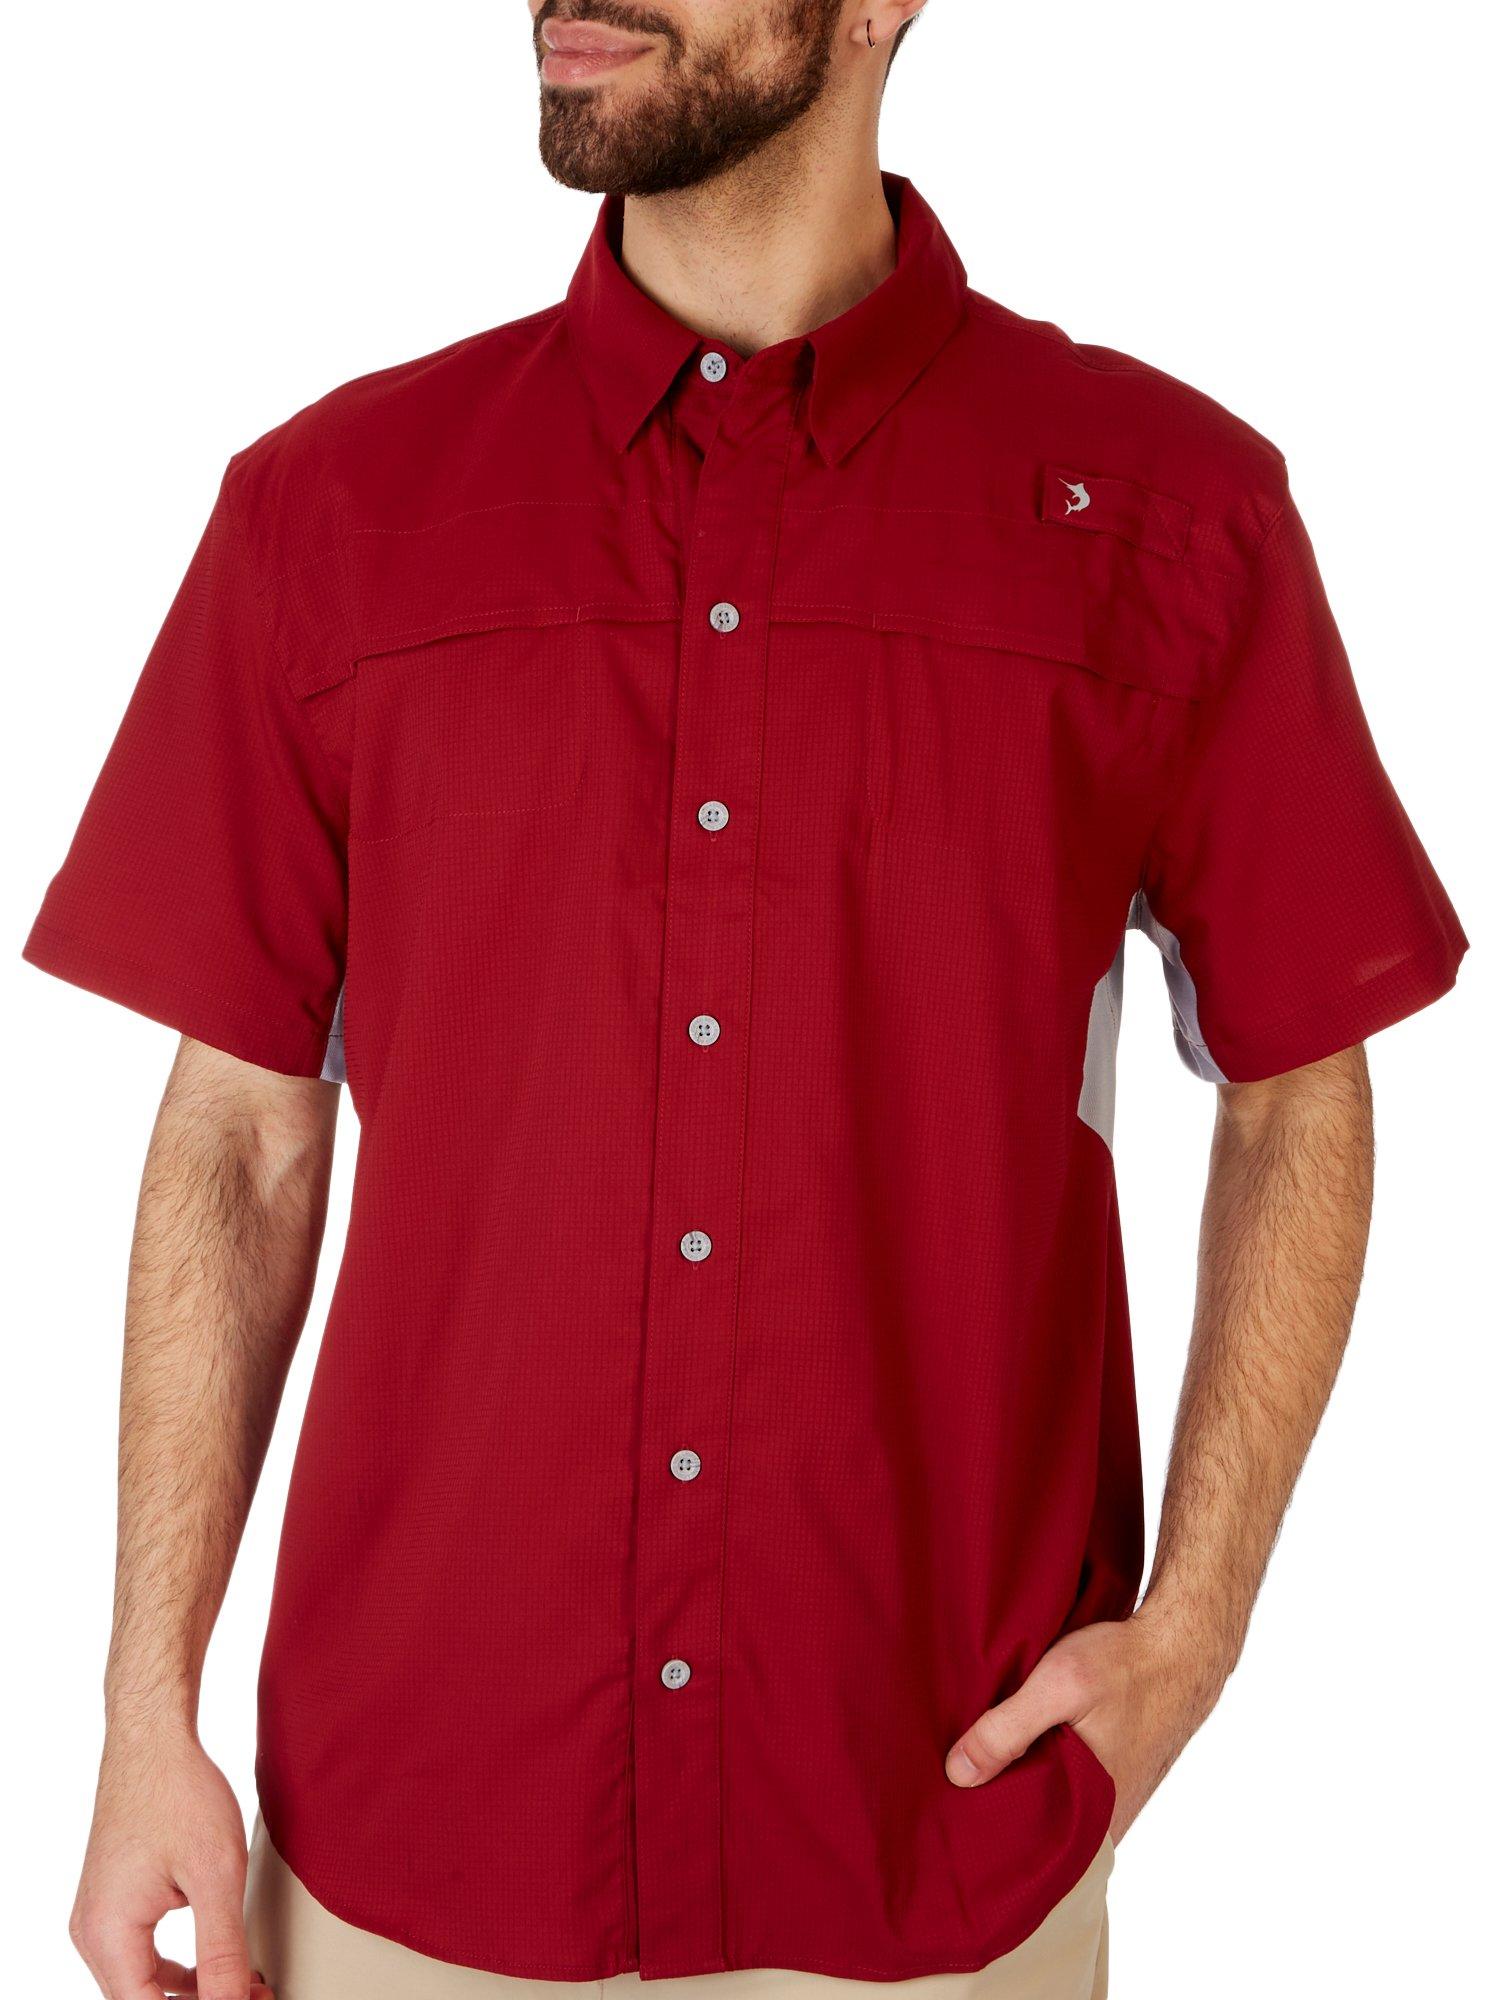 Reel Legends Mariner 11 Mens Vented Short Sleeve Shirt Size Large